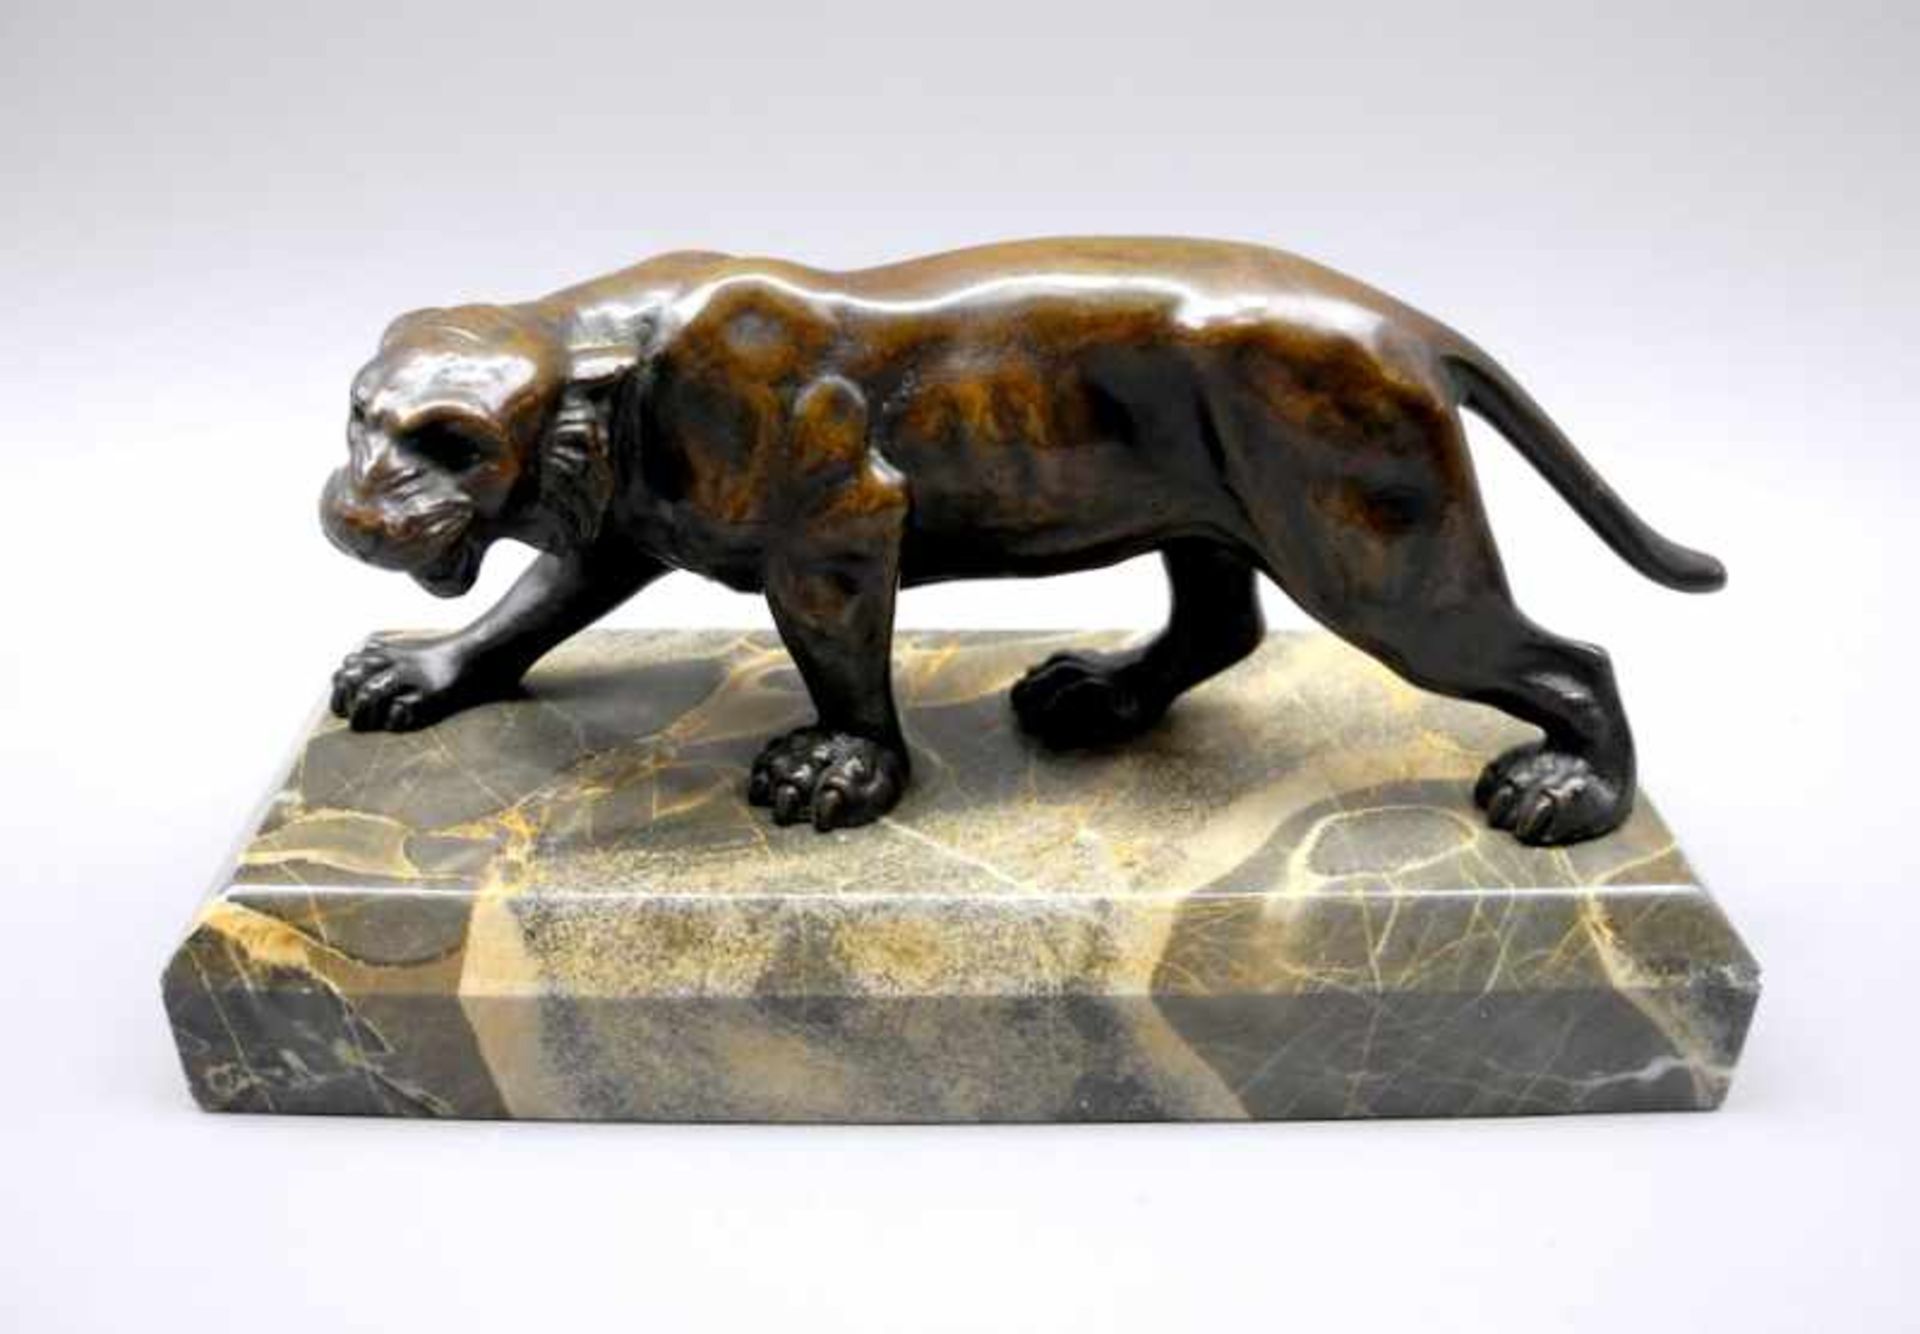 Panther auf der JagdBronze, dunkel patiniert, auf Marmorsockel. Plastisch ausgearbeitete Darstellung